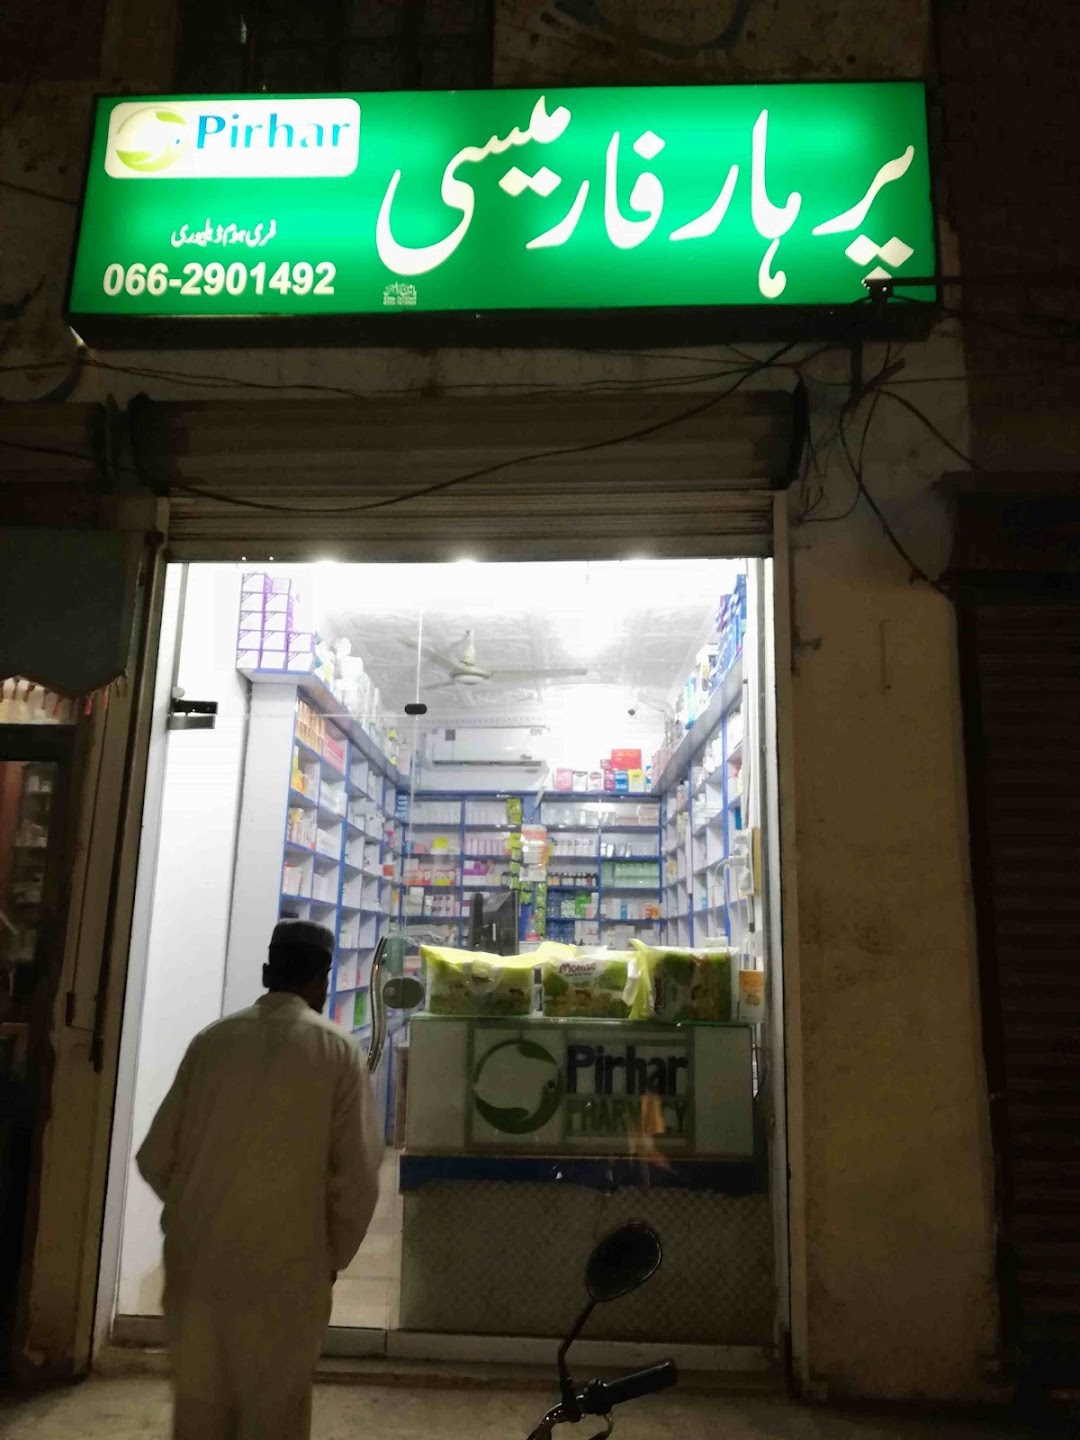 Pirhar Pharmacy